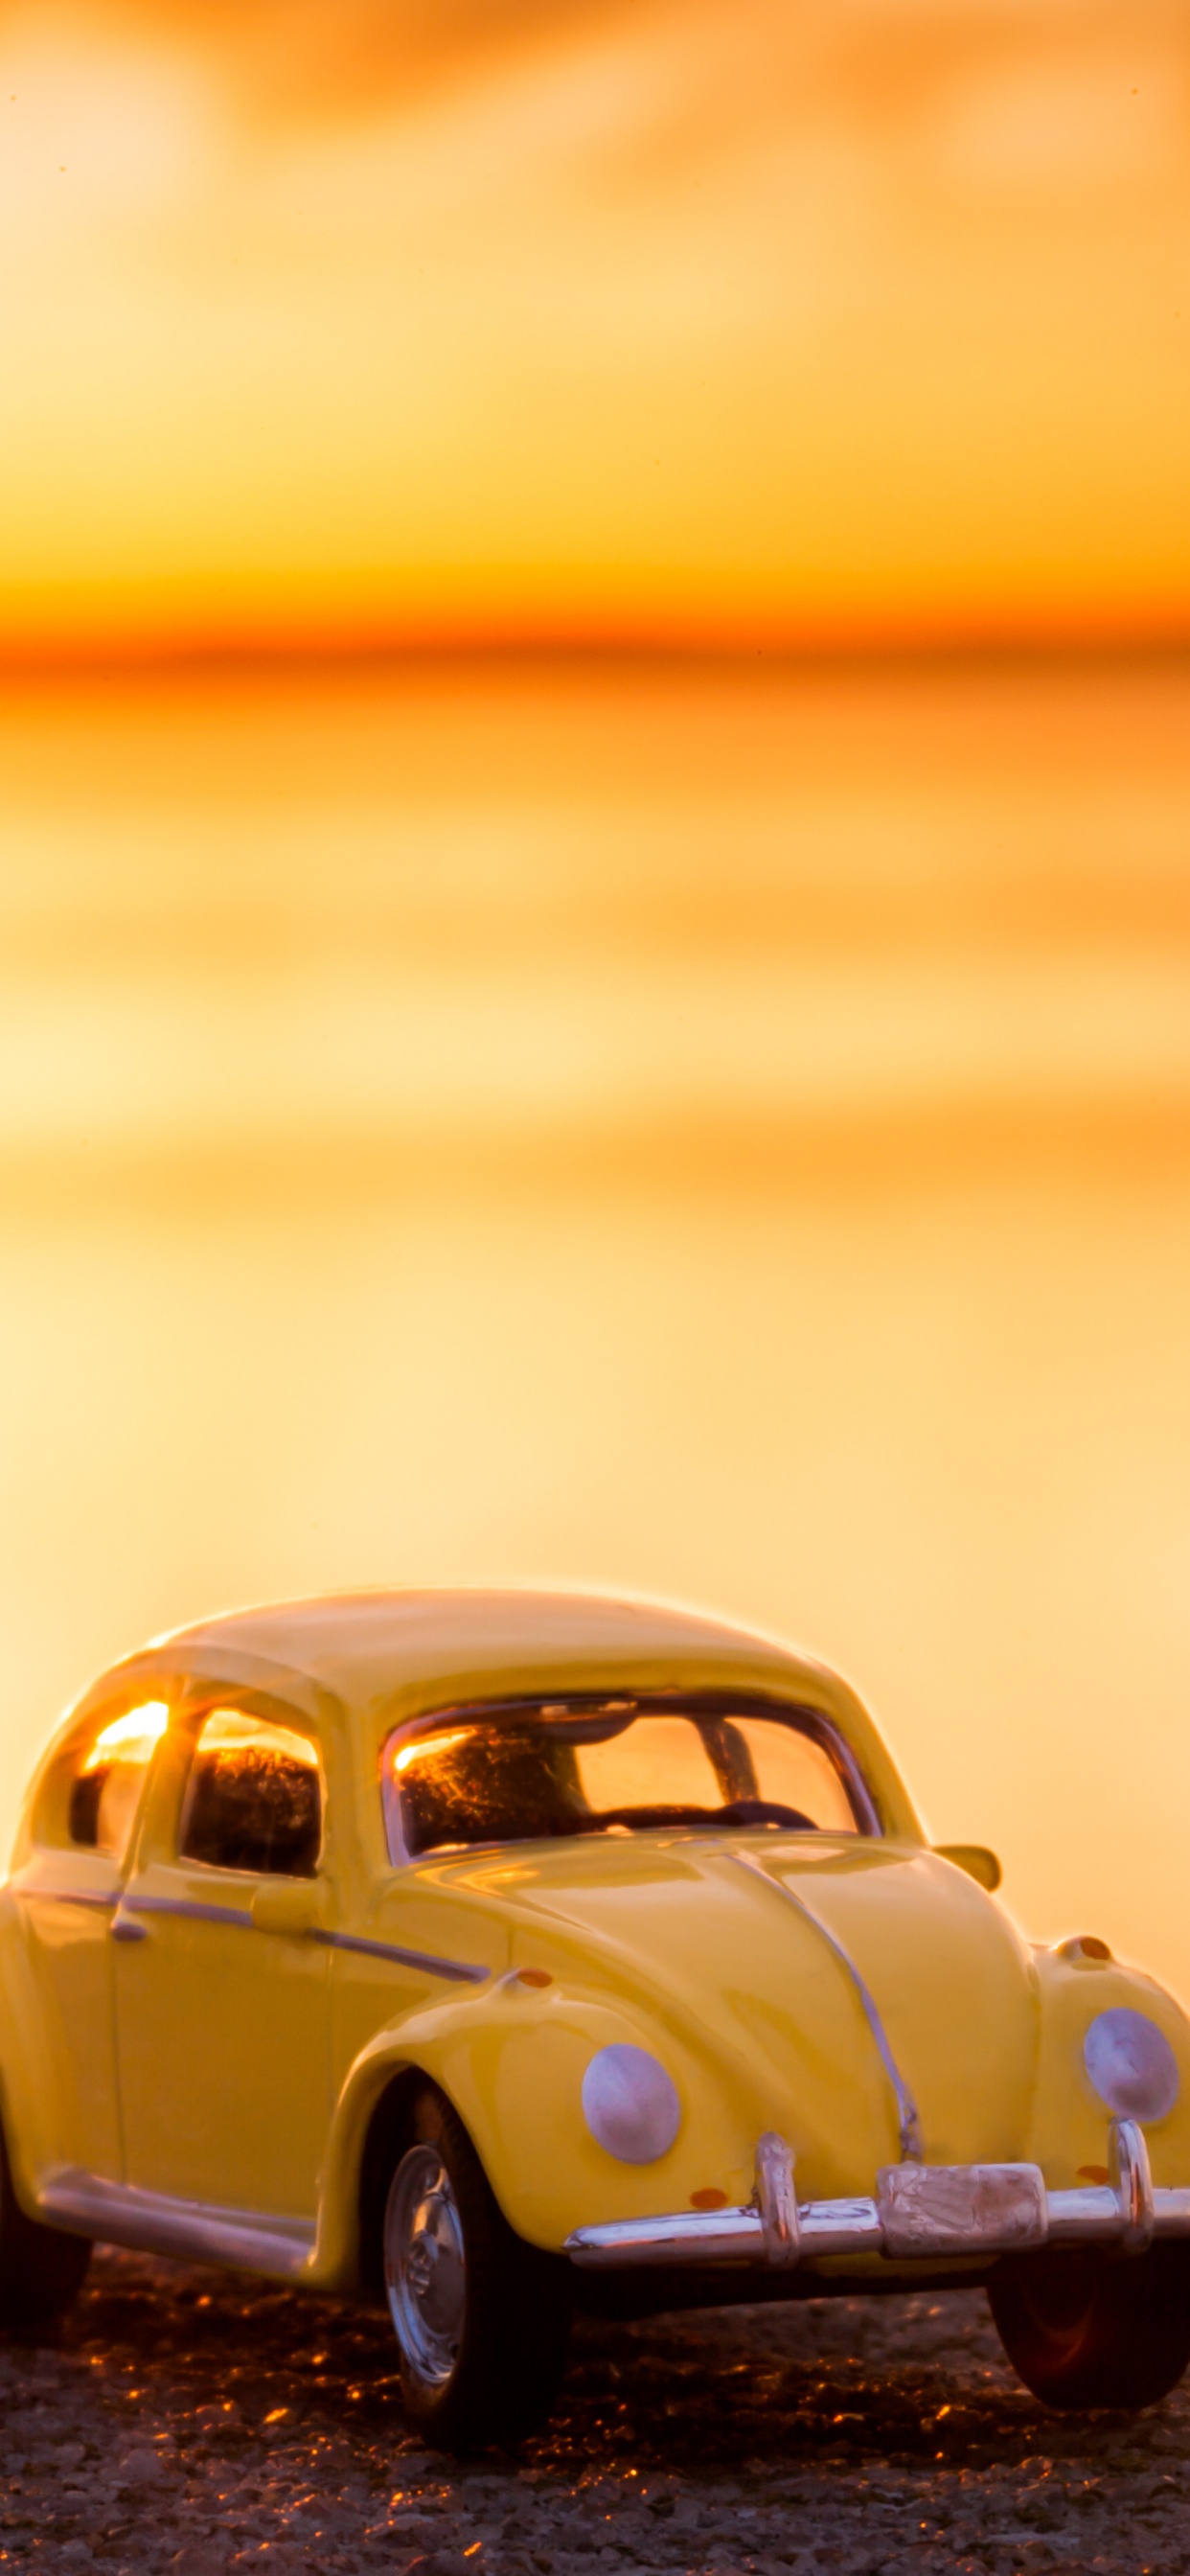 Volkswagen Beetle Amarillo en la Orilla Durante la Puesta de Sol. Wallpaper in 1242x2688 Resolution